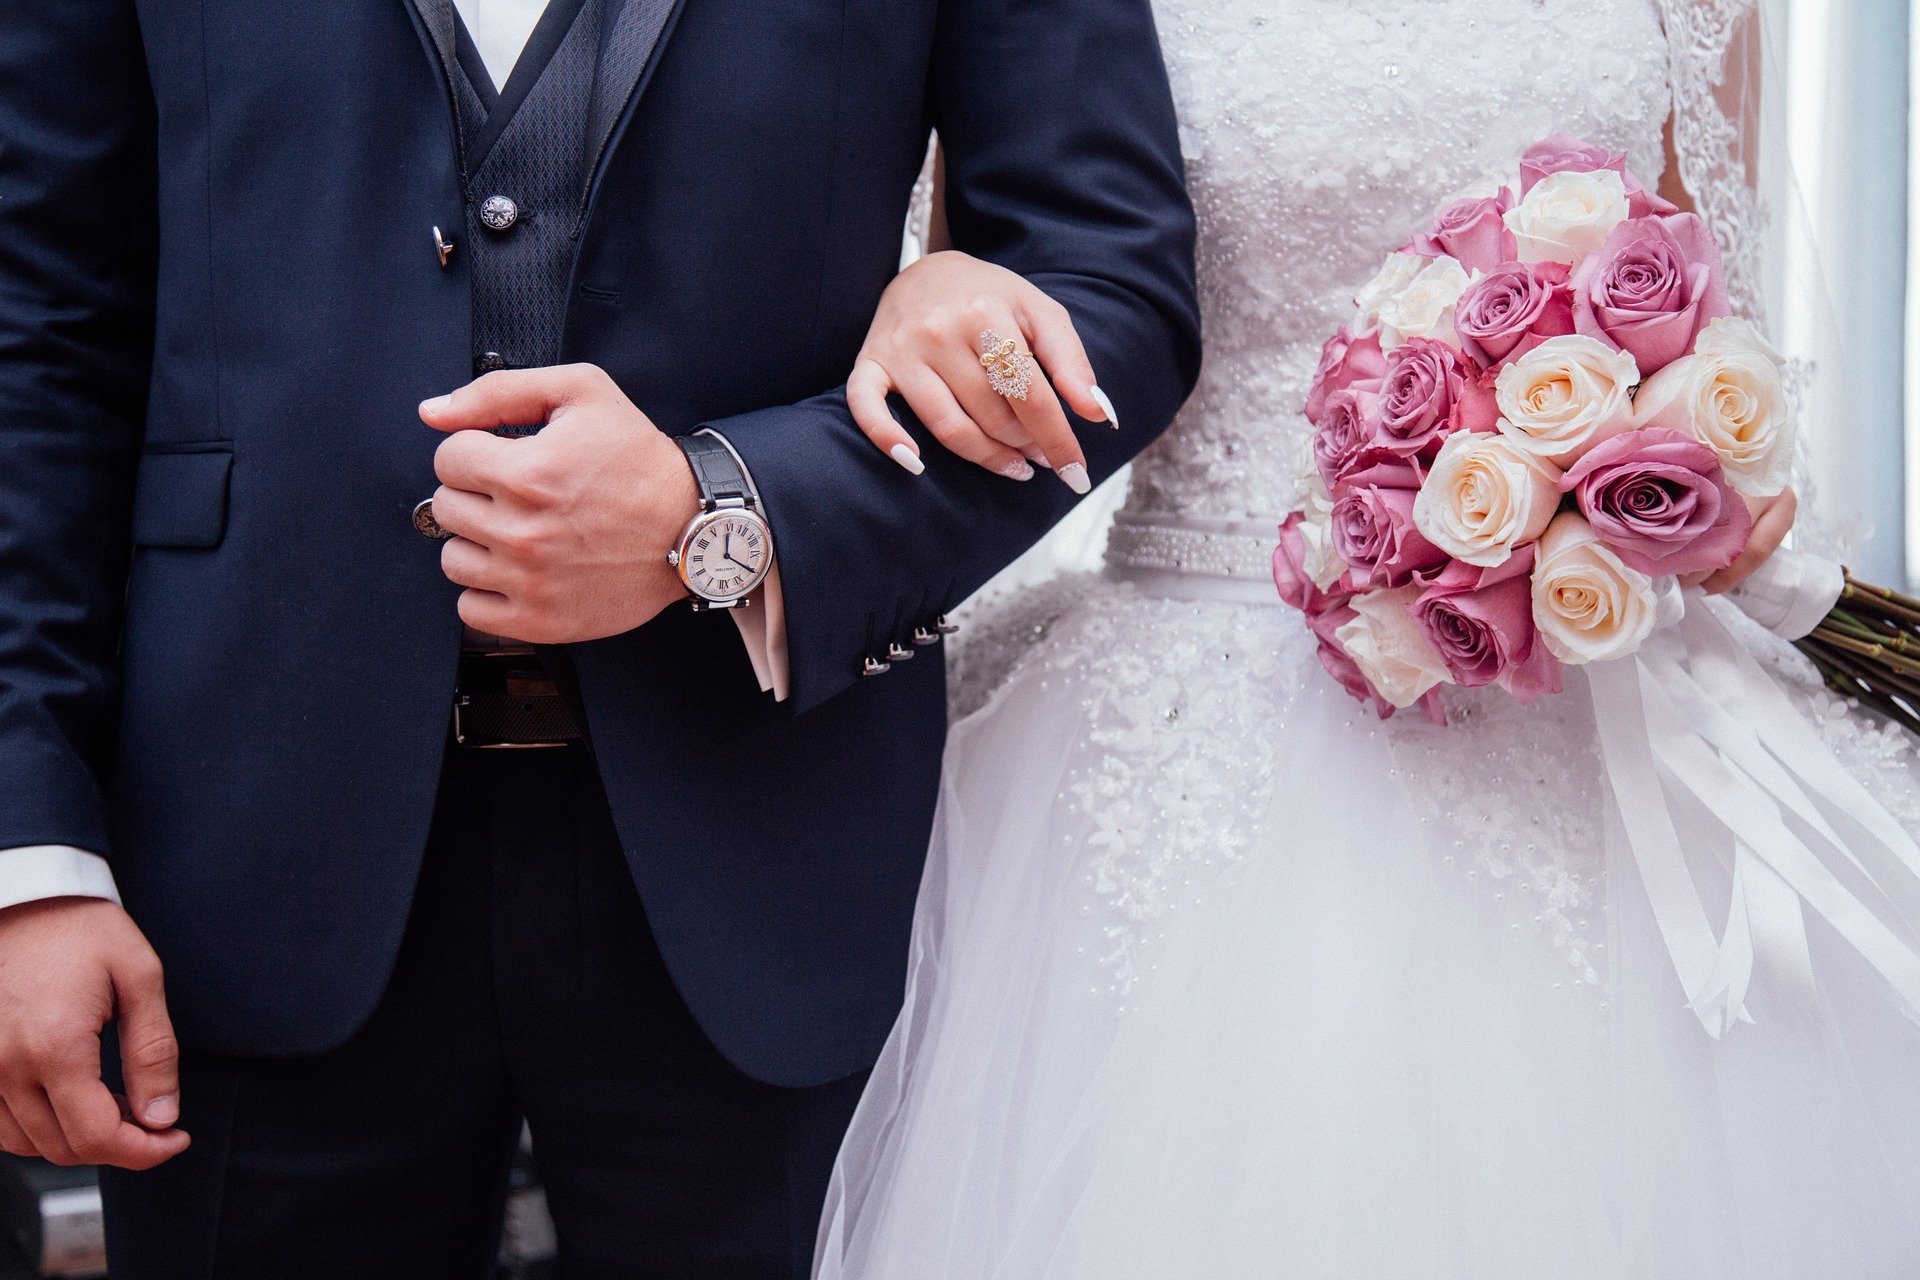 Die Hochzeitszeremonie verlief reibungslos, bis das Paar das Eheversprechen abgab | Quelle: Pixaby